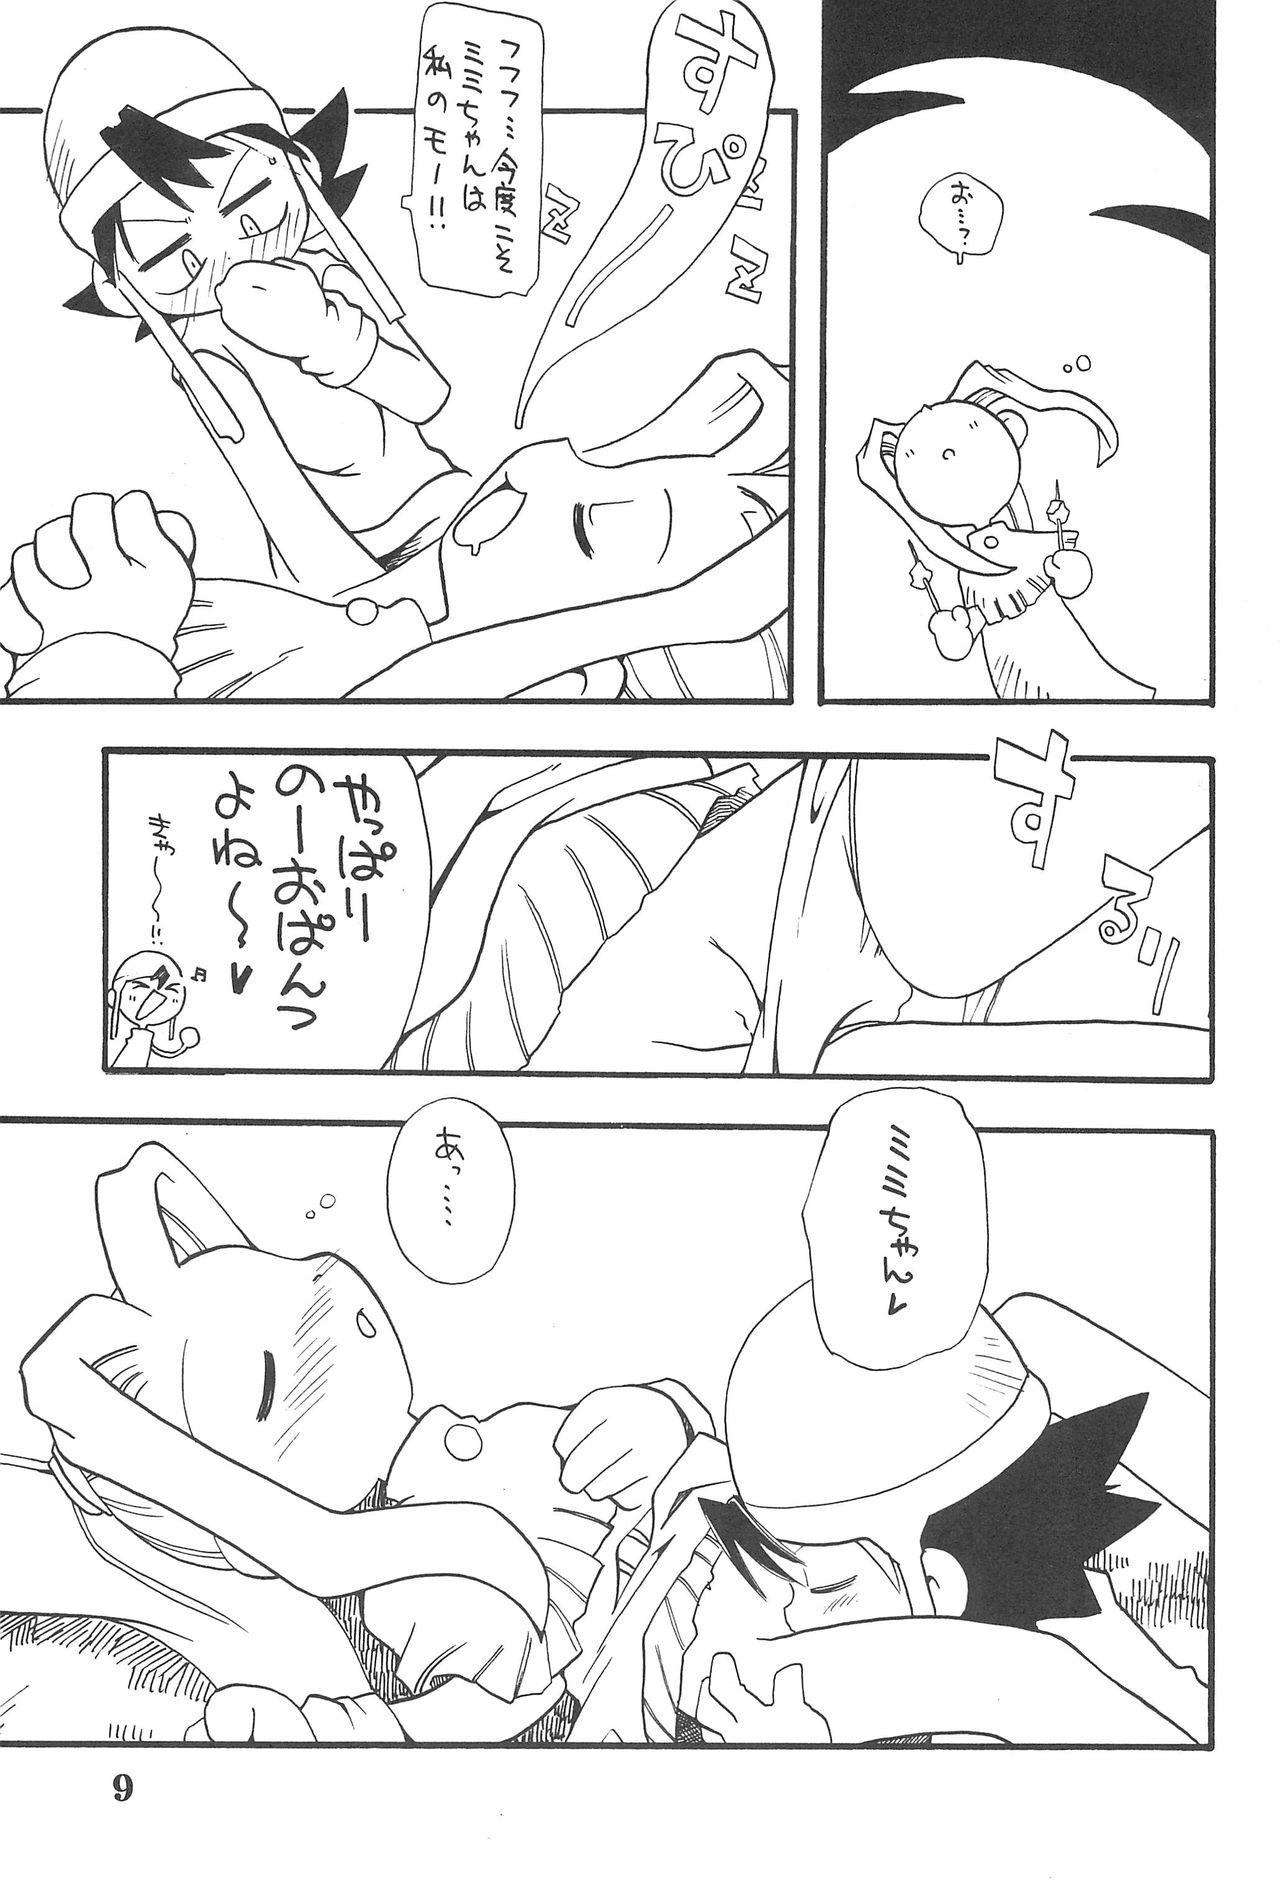 Outdoor K8 KICHIKU BOOK8 COSTOM - Digimon adventure Kashima - Page 9